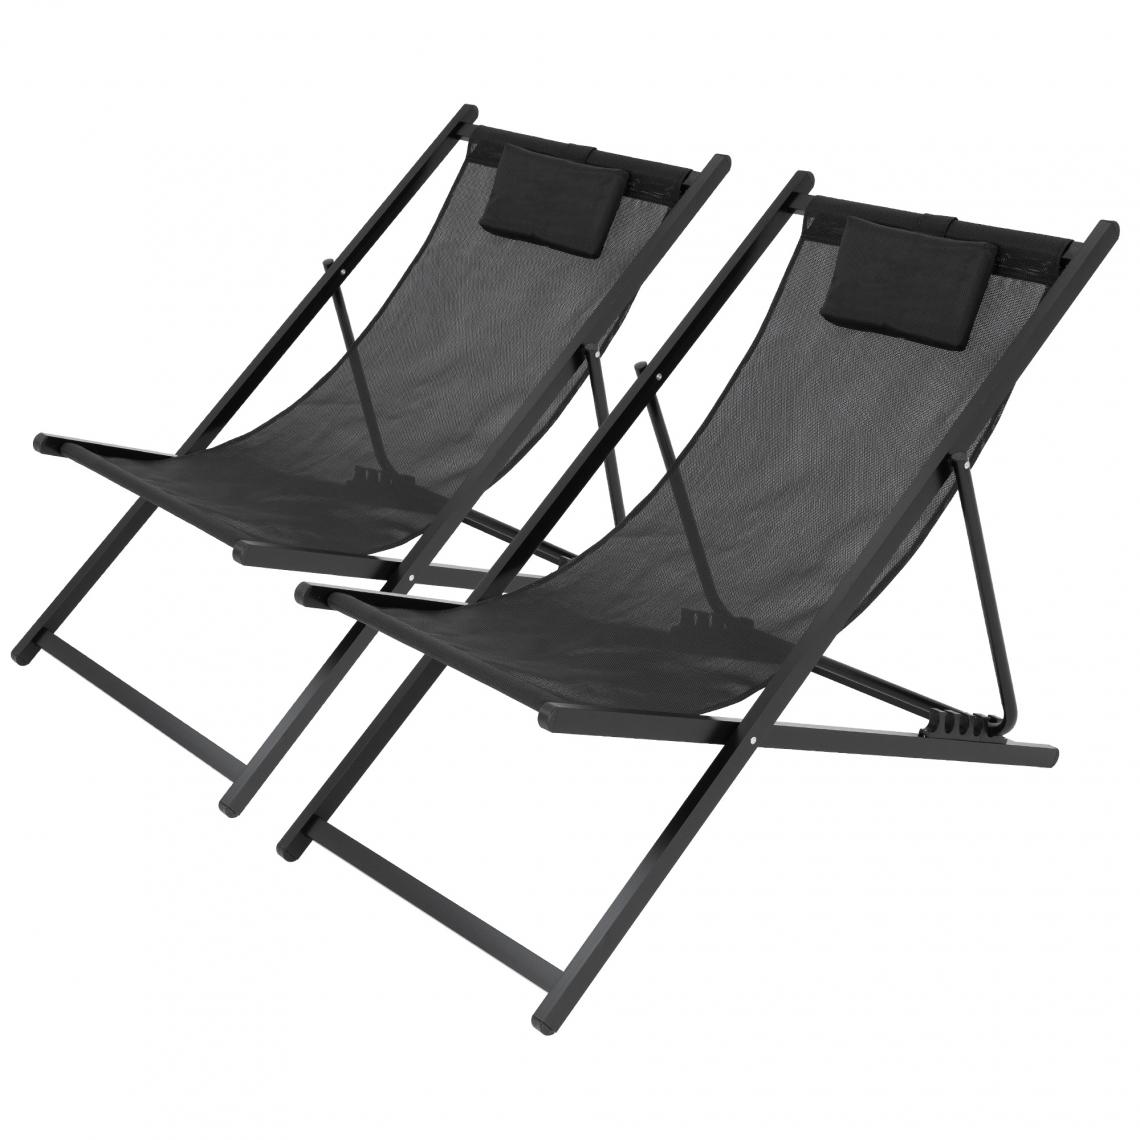 Ecd Germany - 2x Chaise longue pliante bain de soleil de plage jardin réglable aluminium noir - Chaises de jardin